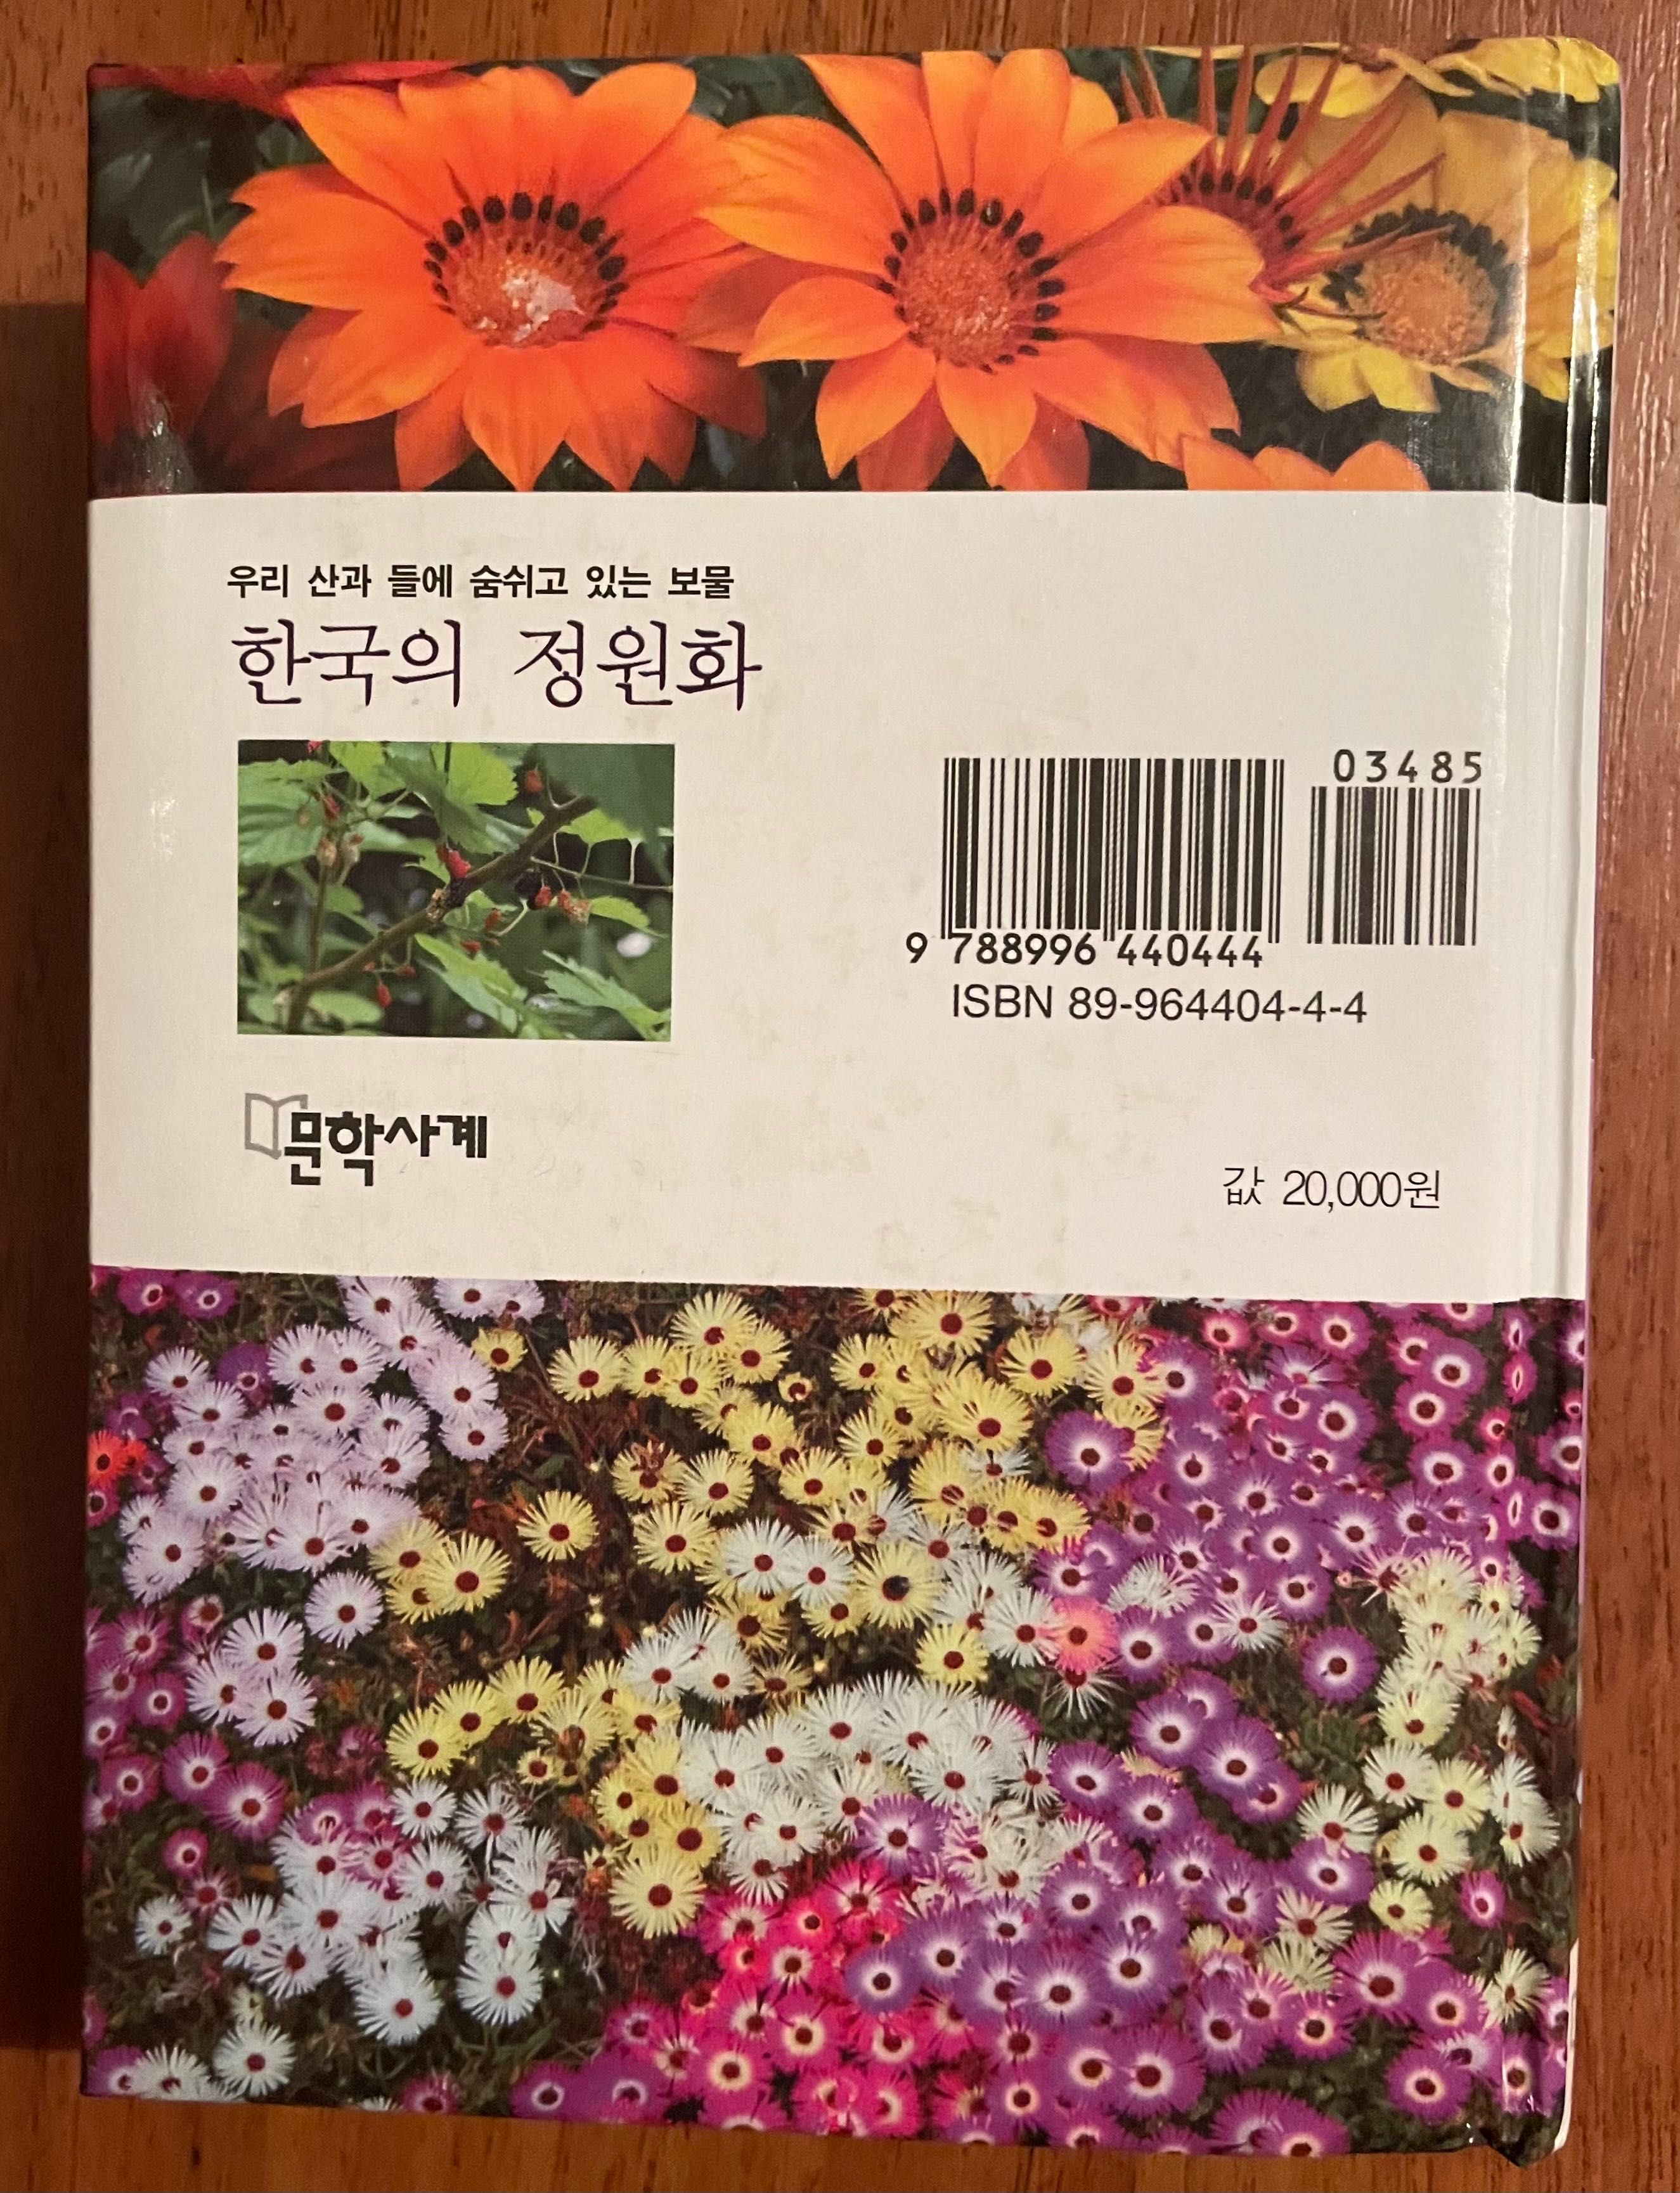 The garden flowers of Korea